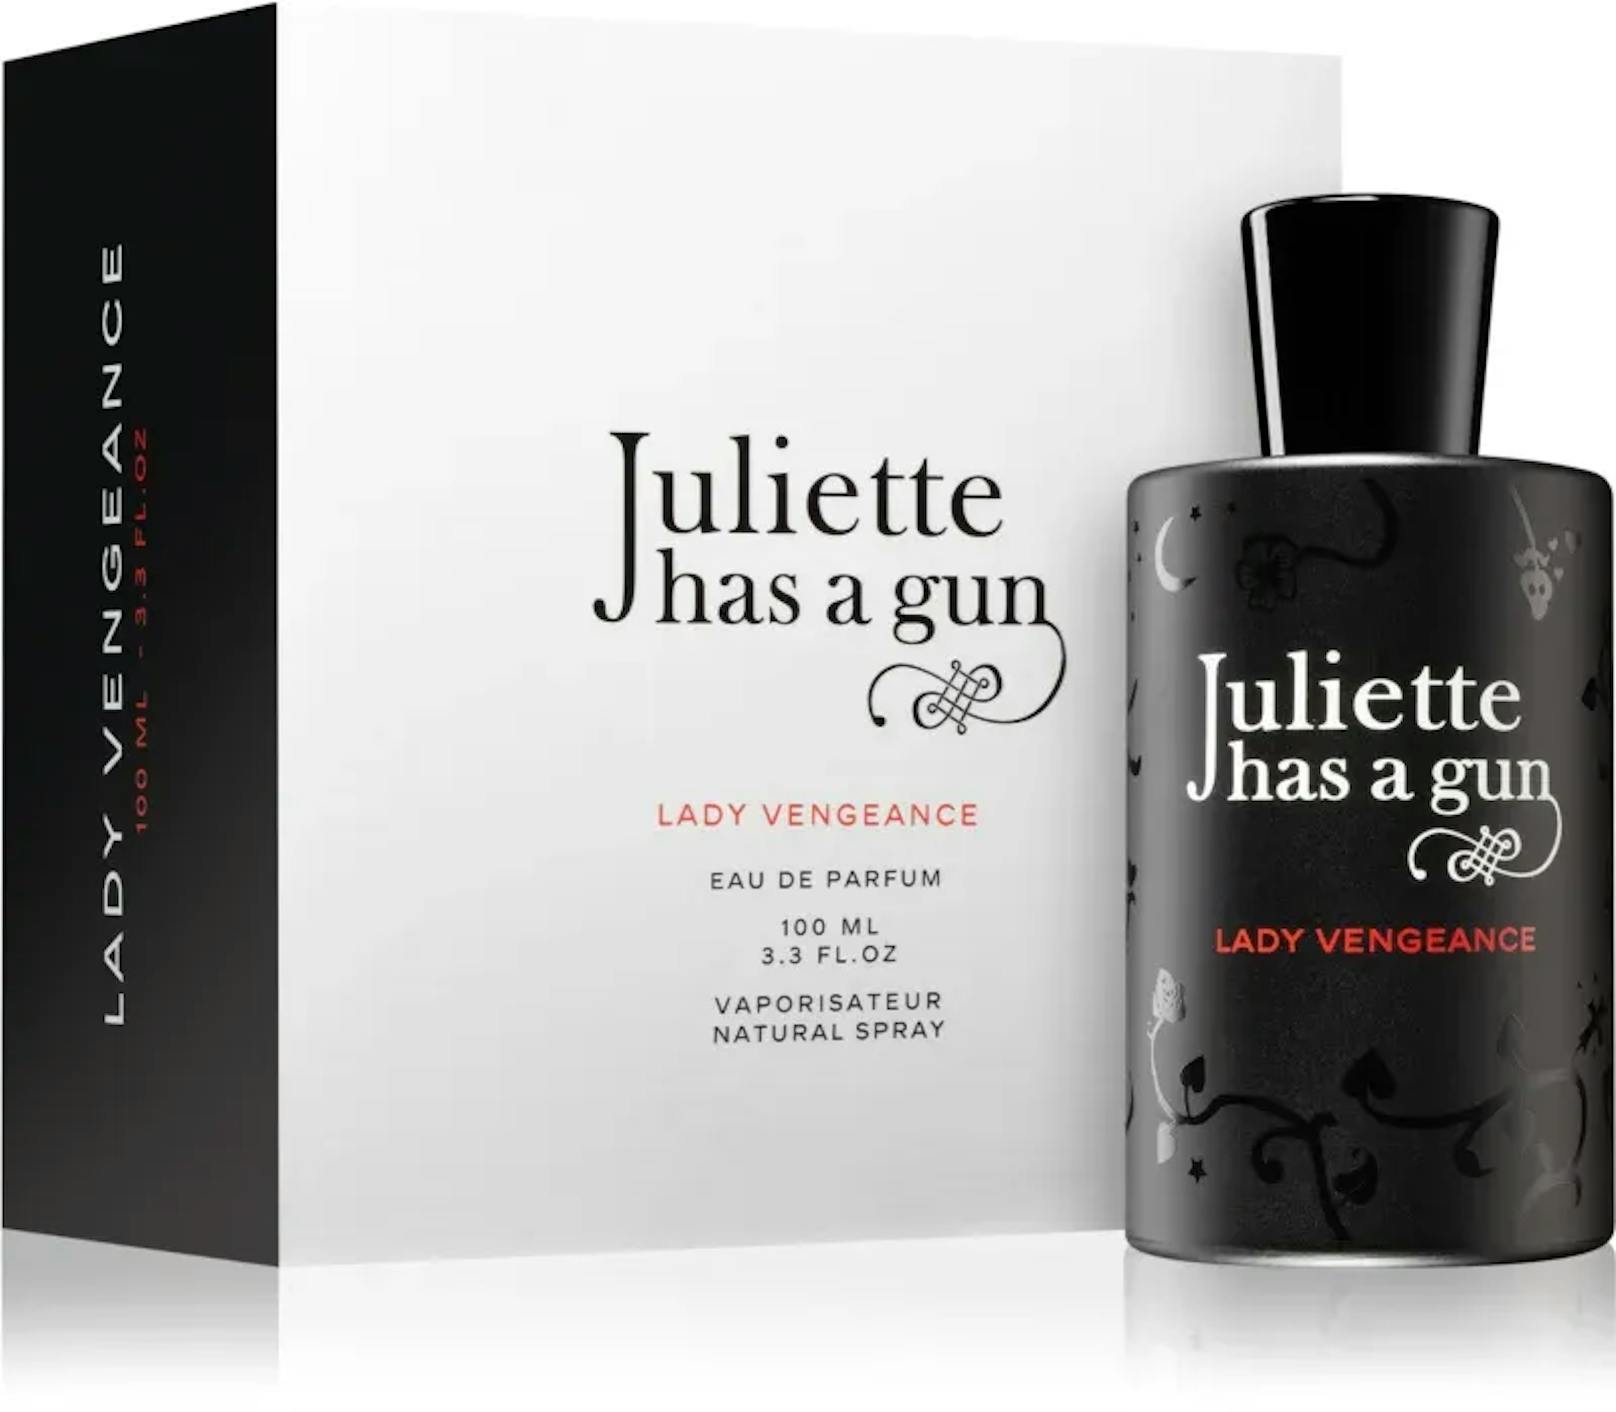 "Juliette has a Gun" von Lady Vengeance riecht genau nach seinem Namen. Das Parfum trägt den Duft einer prächtigen bulgarischen Rose, welches mit einer sanften Vanillenote vermischt wurde. Der perfekte Duft für anmutige und selbstbewusste Mütter.